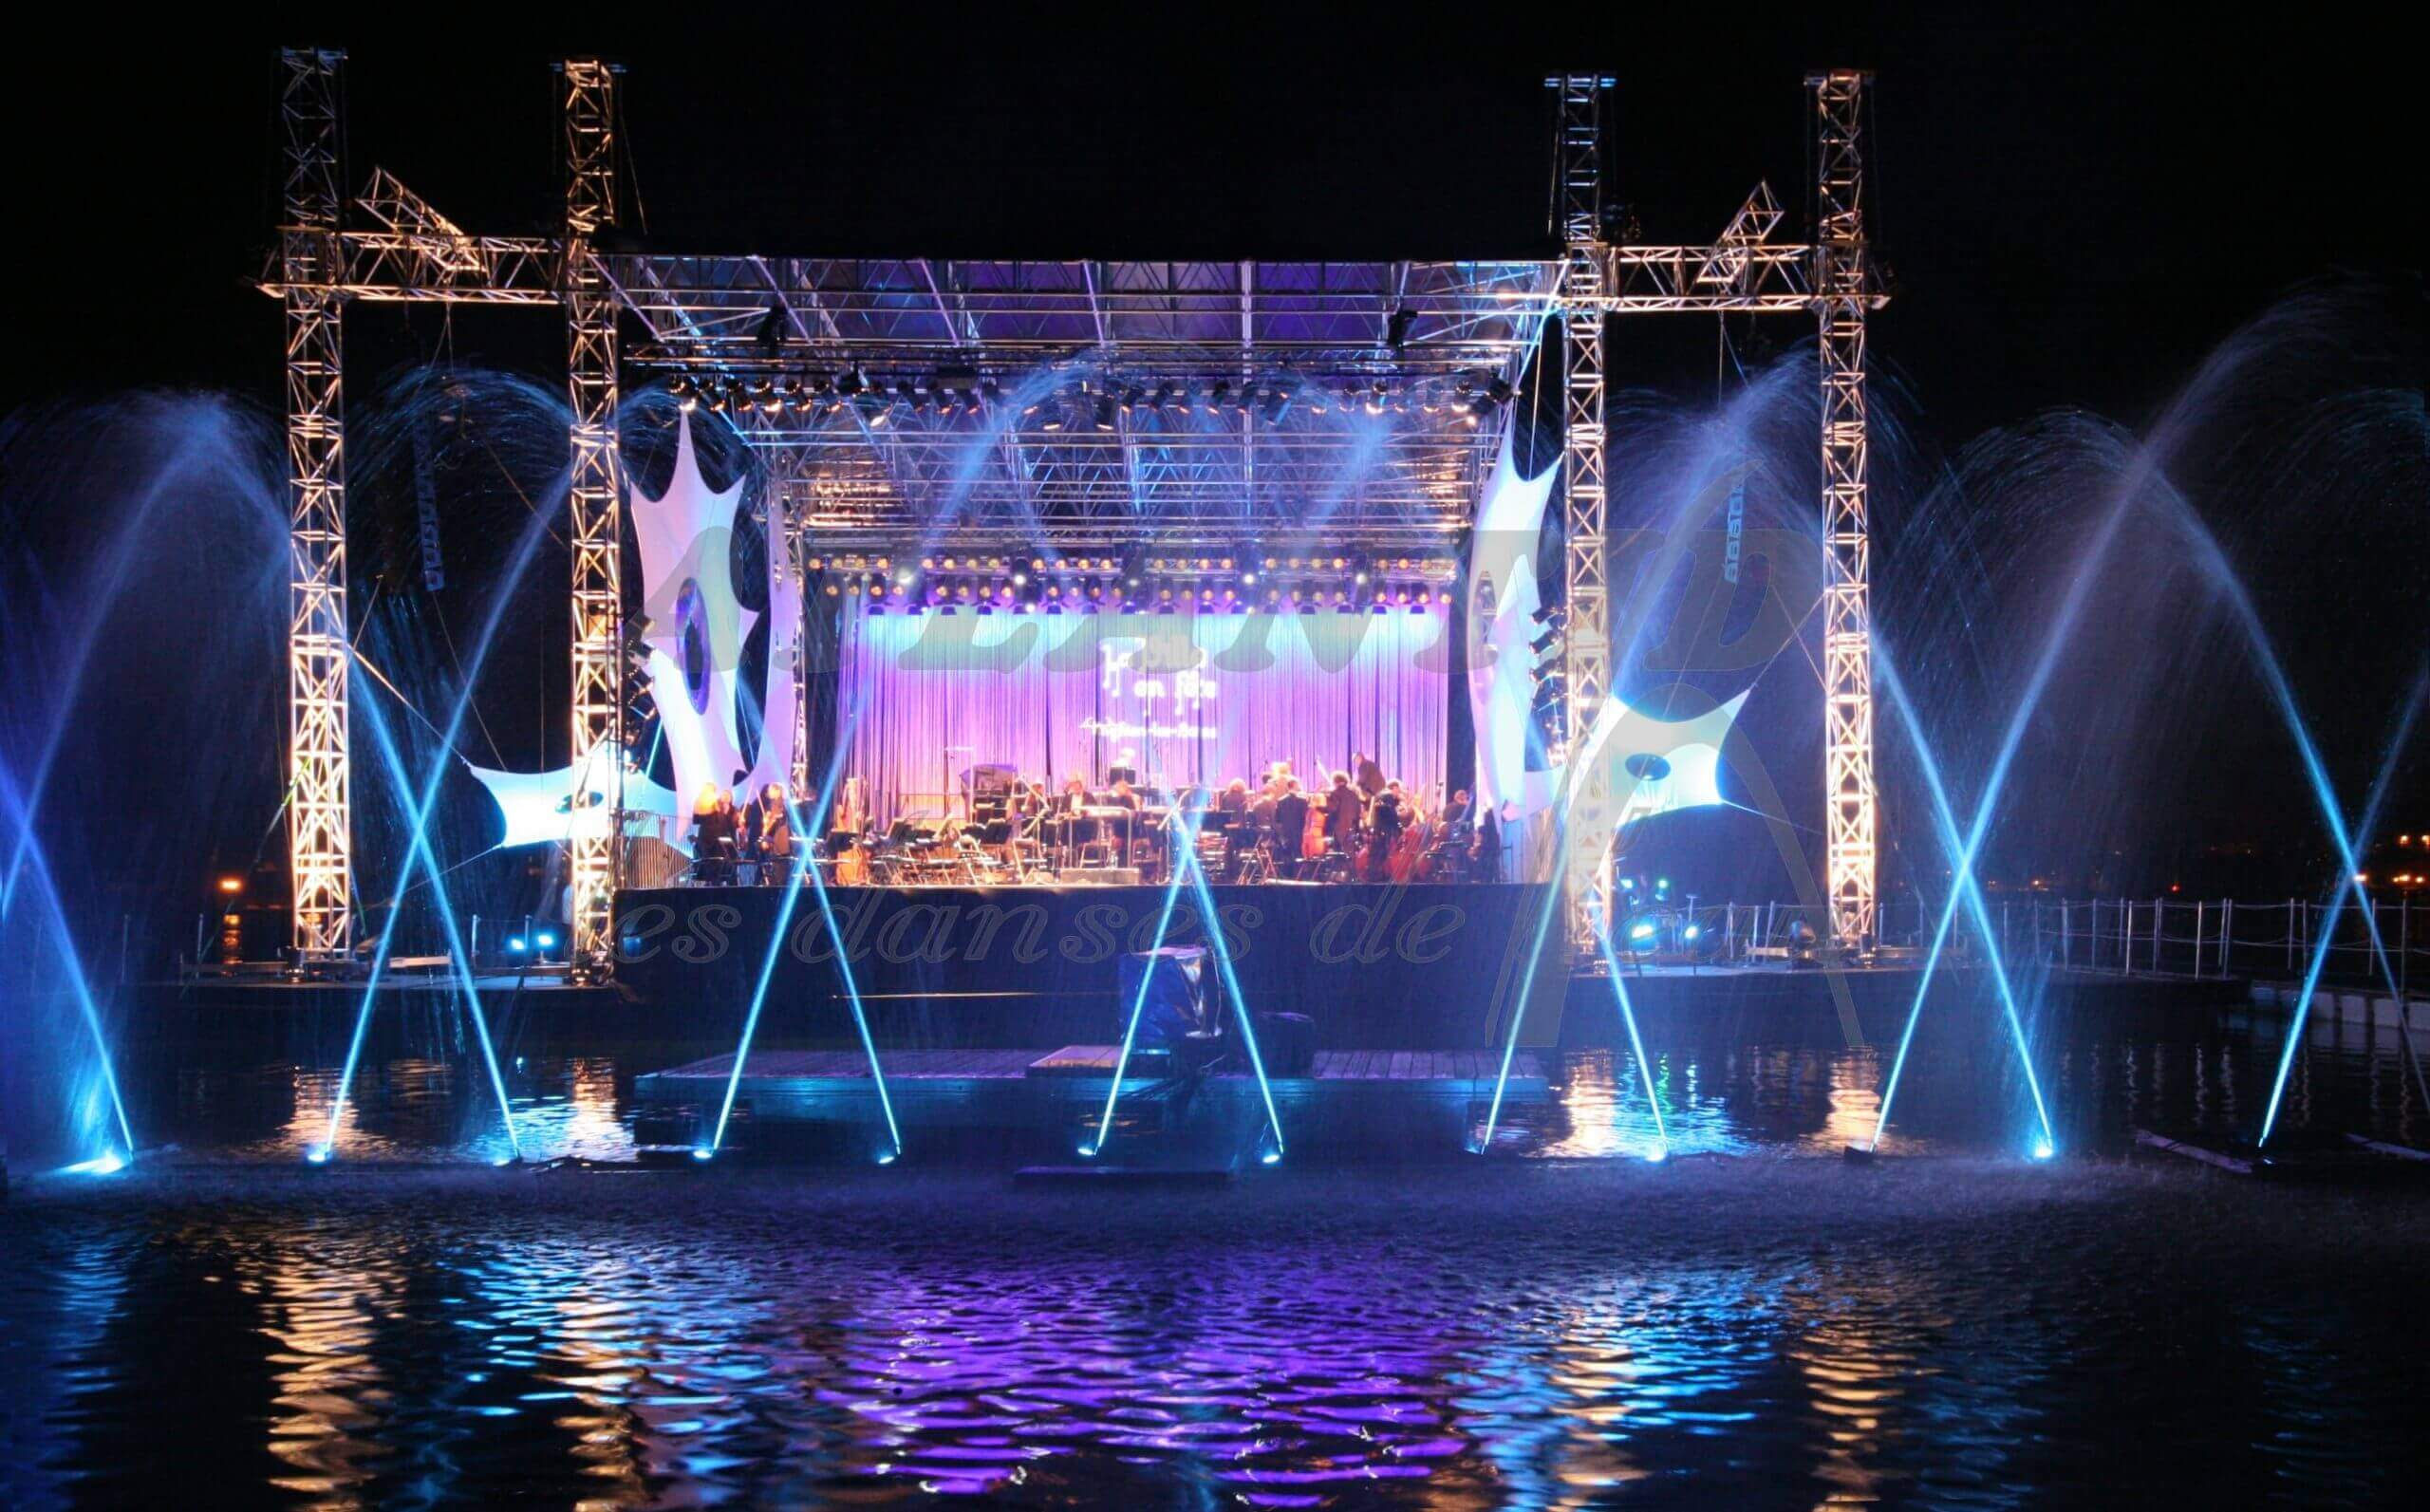 Atlantid - Escenario de conciertos con chorros de agua azul al frente